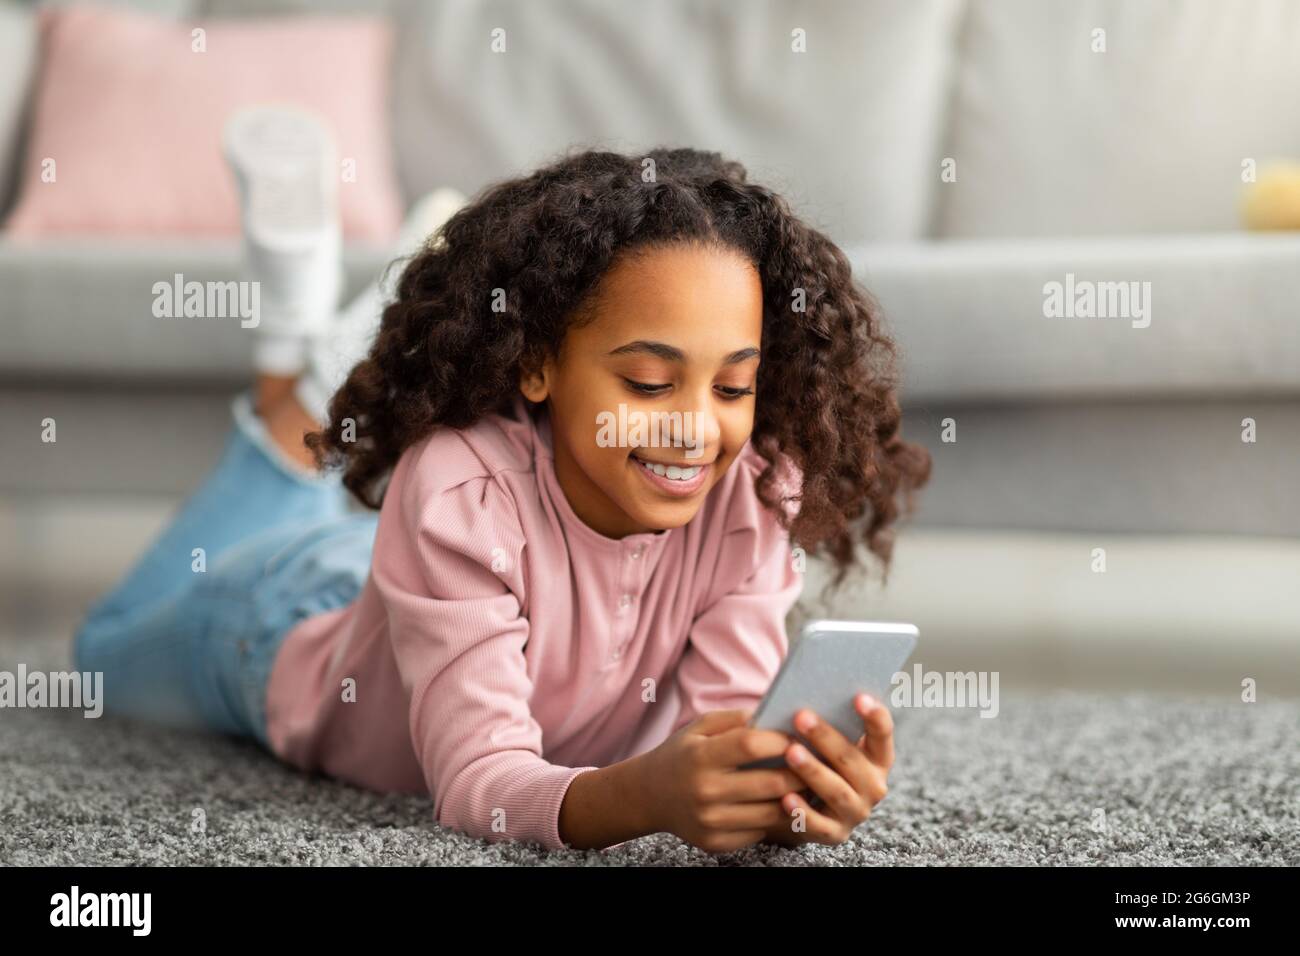 Natifs numériques. Une fille américaine africaine positive utilisant son smartphone, envoyant des SMS dans les médias sociaux, couchée sur le tapis de sol Banque D'Images